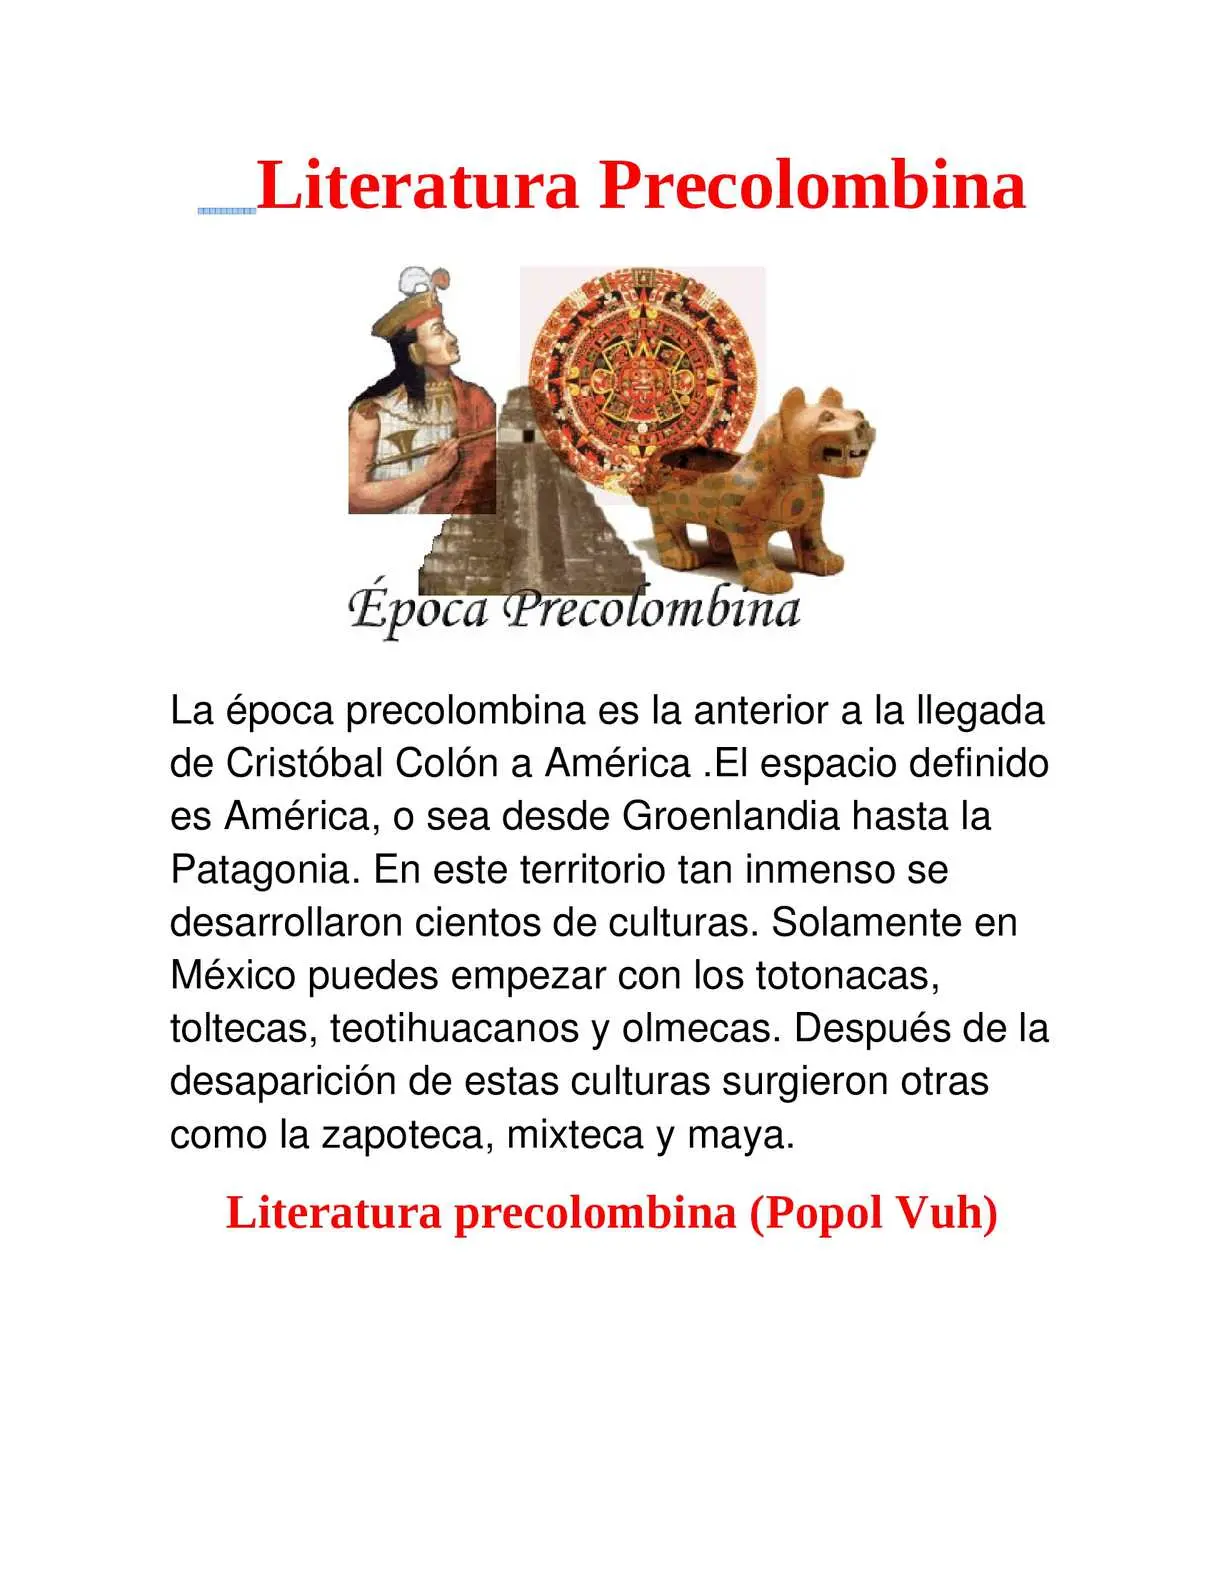 literatura precolombina resumen - Qué es la literatura precolombina y sus principales características